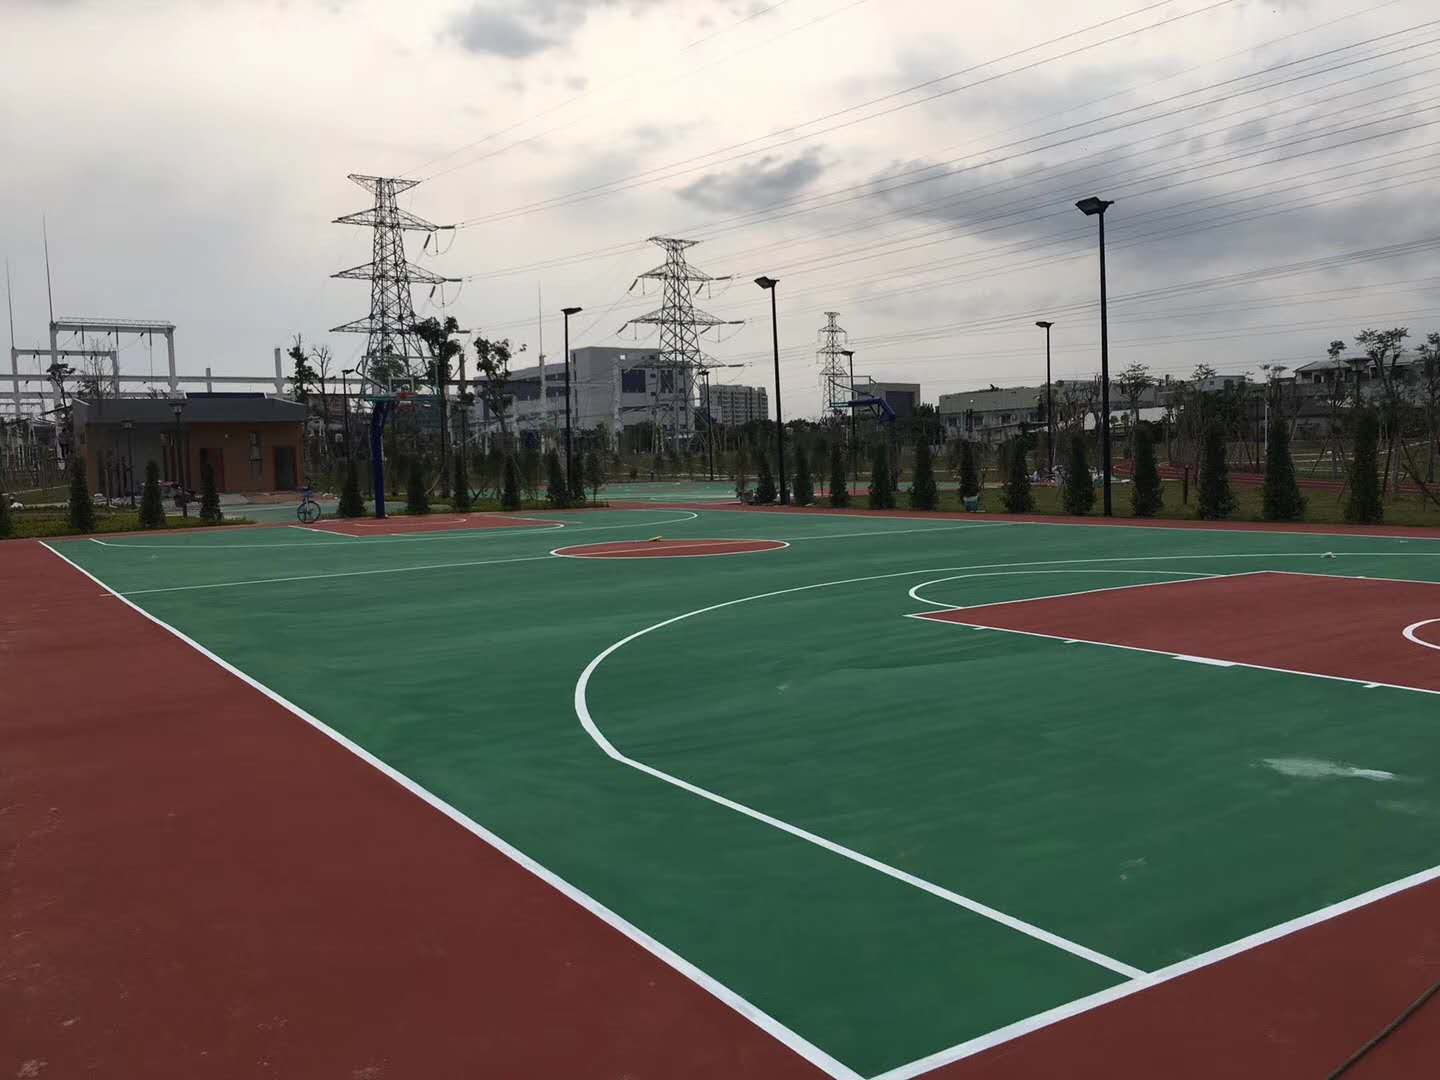 榆林塑胶跑道、足球场、篮球场、网球场、羽毛球场